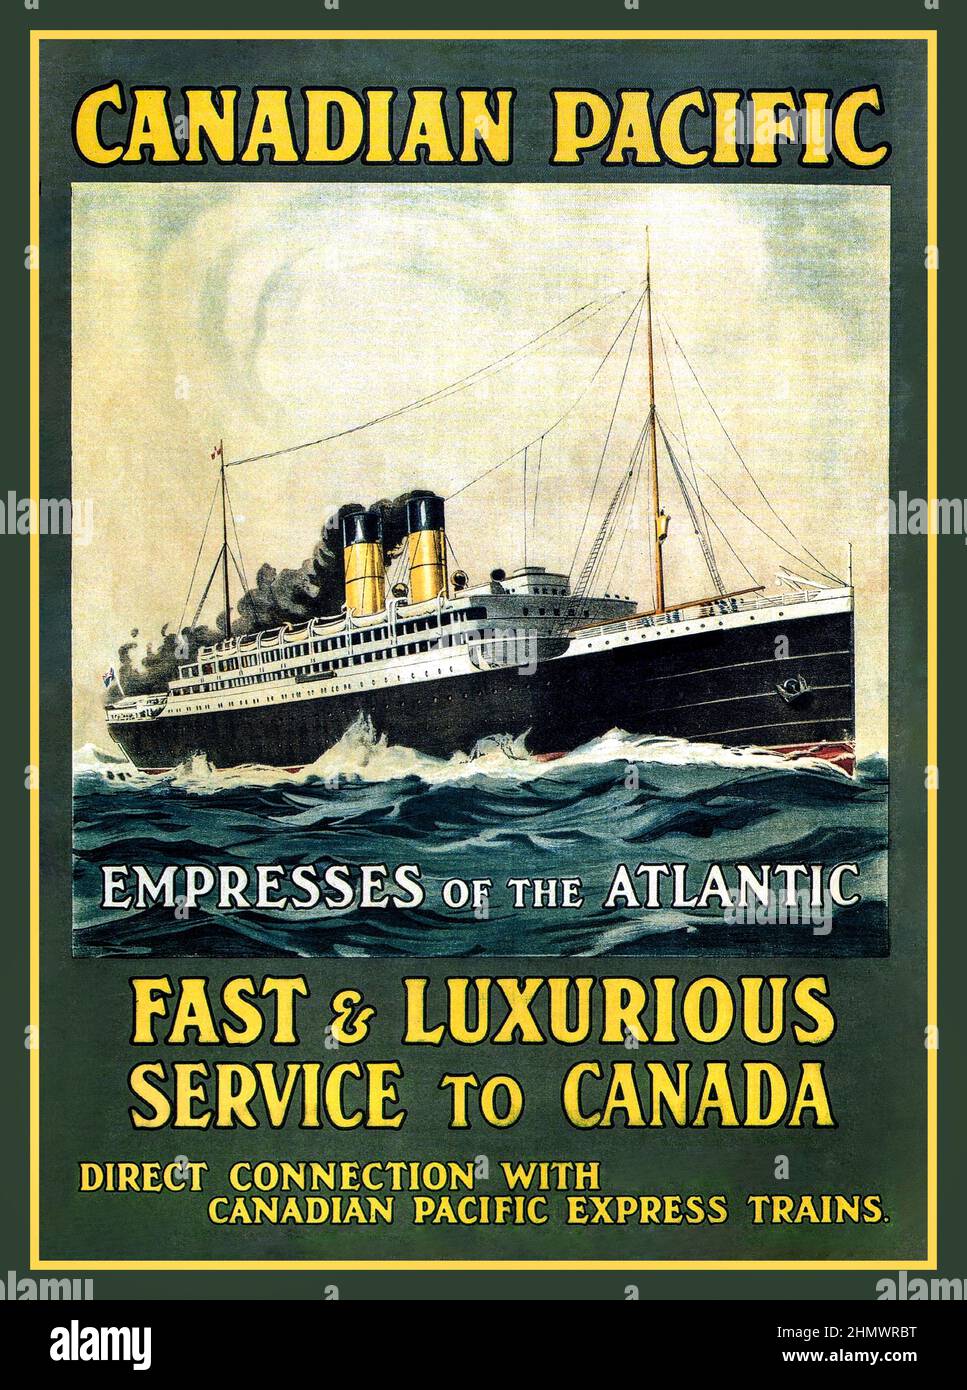 CANADIAN PACIFIC 1910 Ocean Liner Poster Canadian Pacific. Imperi dell'Atlantico. Servizio veloce e lussuoso per il Canada 'collegamento diretti con i treni Canandian Pacific Express' Foto Stock